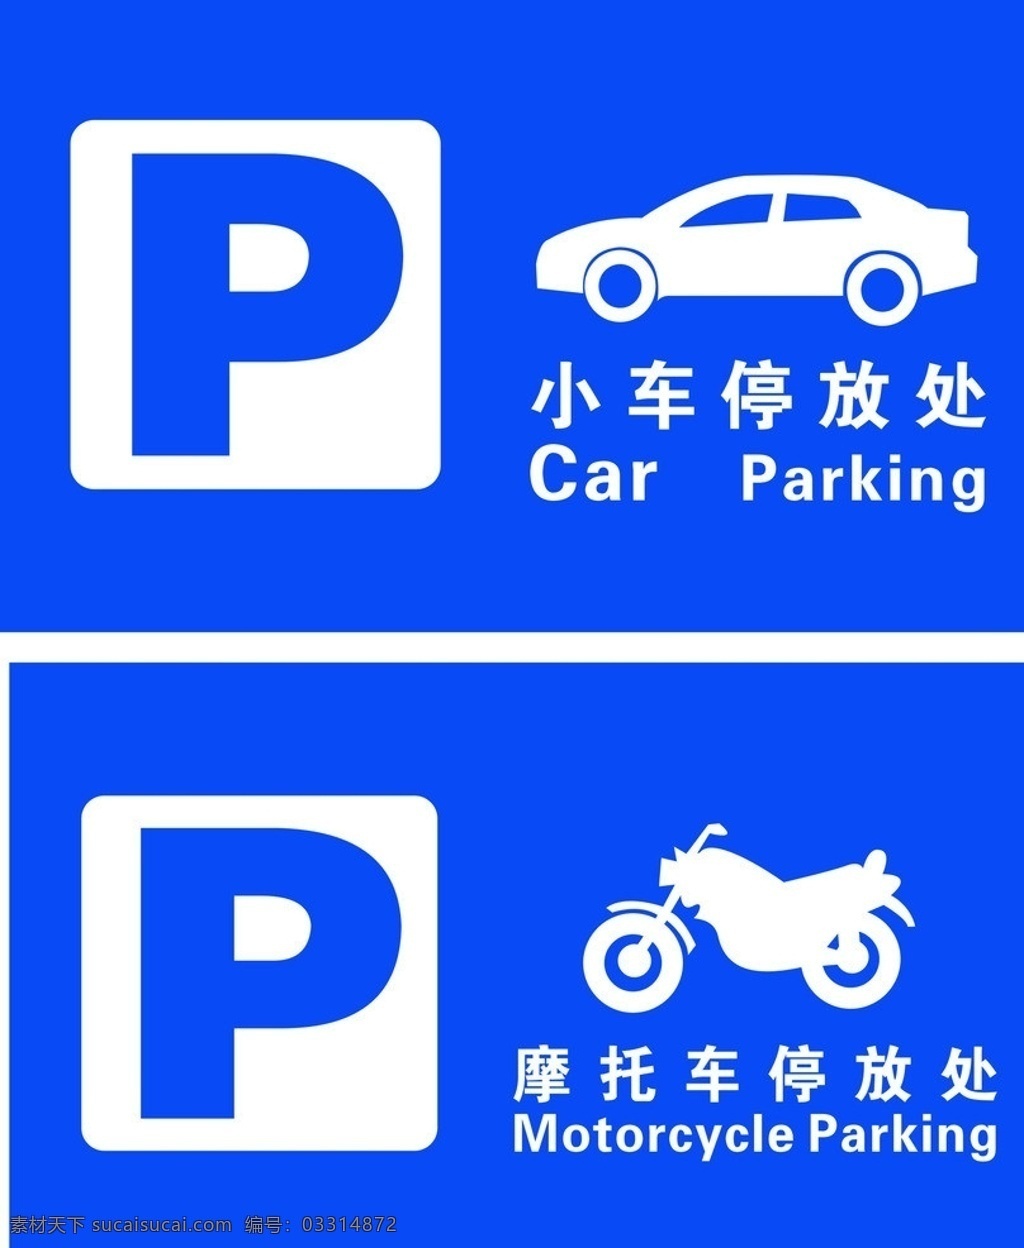 小车停放处 小车 摩托车 停放处 蓝色 标识 公共标识标志 标识标志图标 矢量